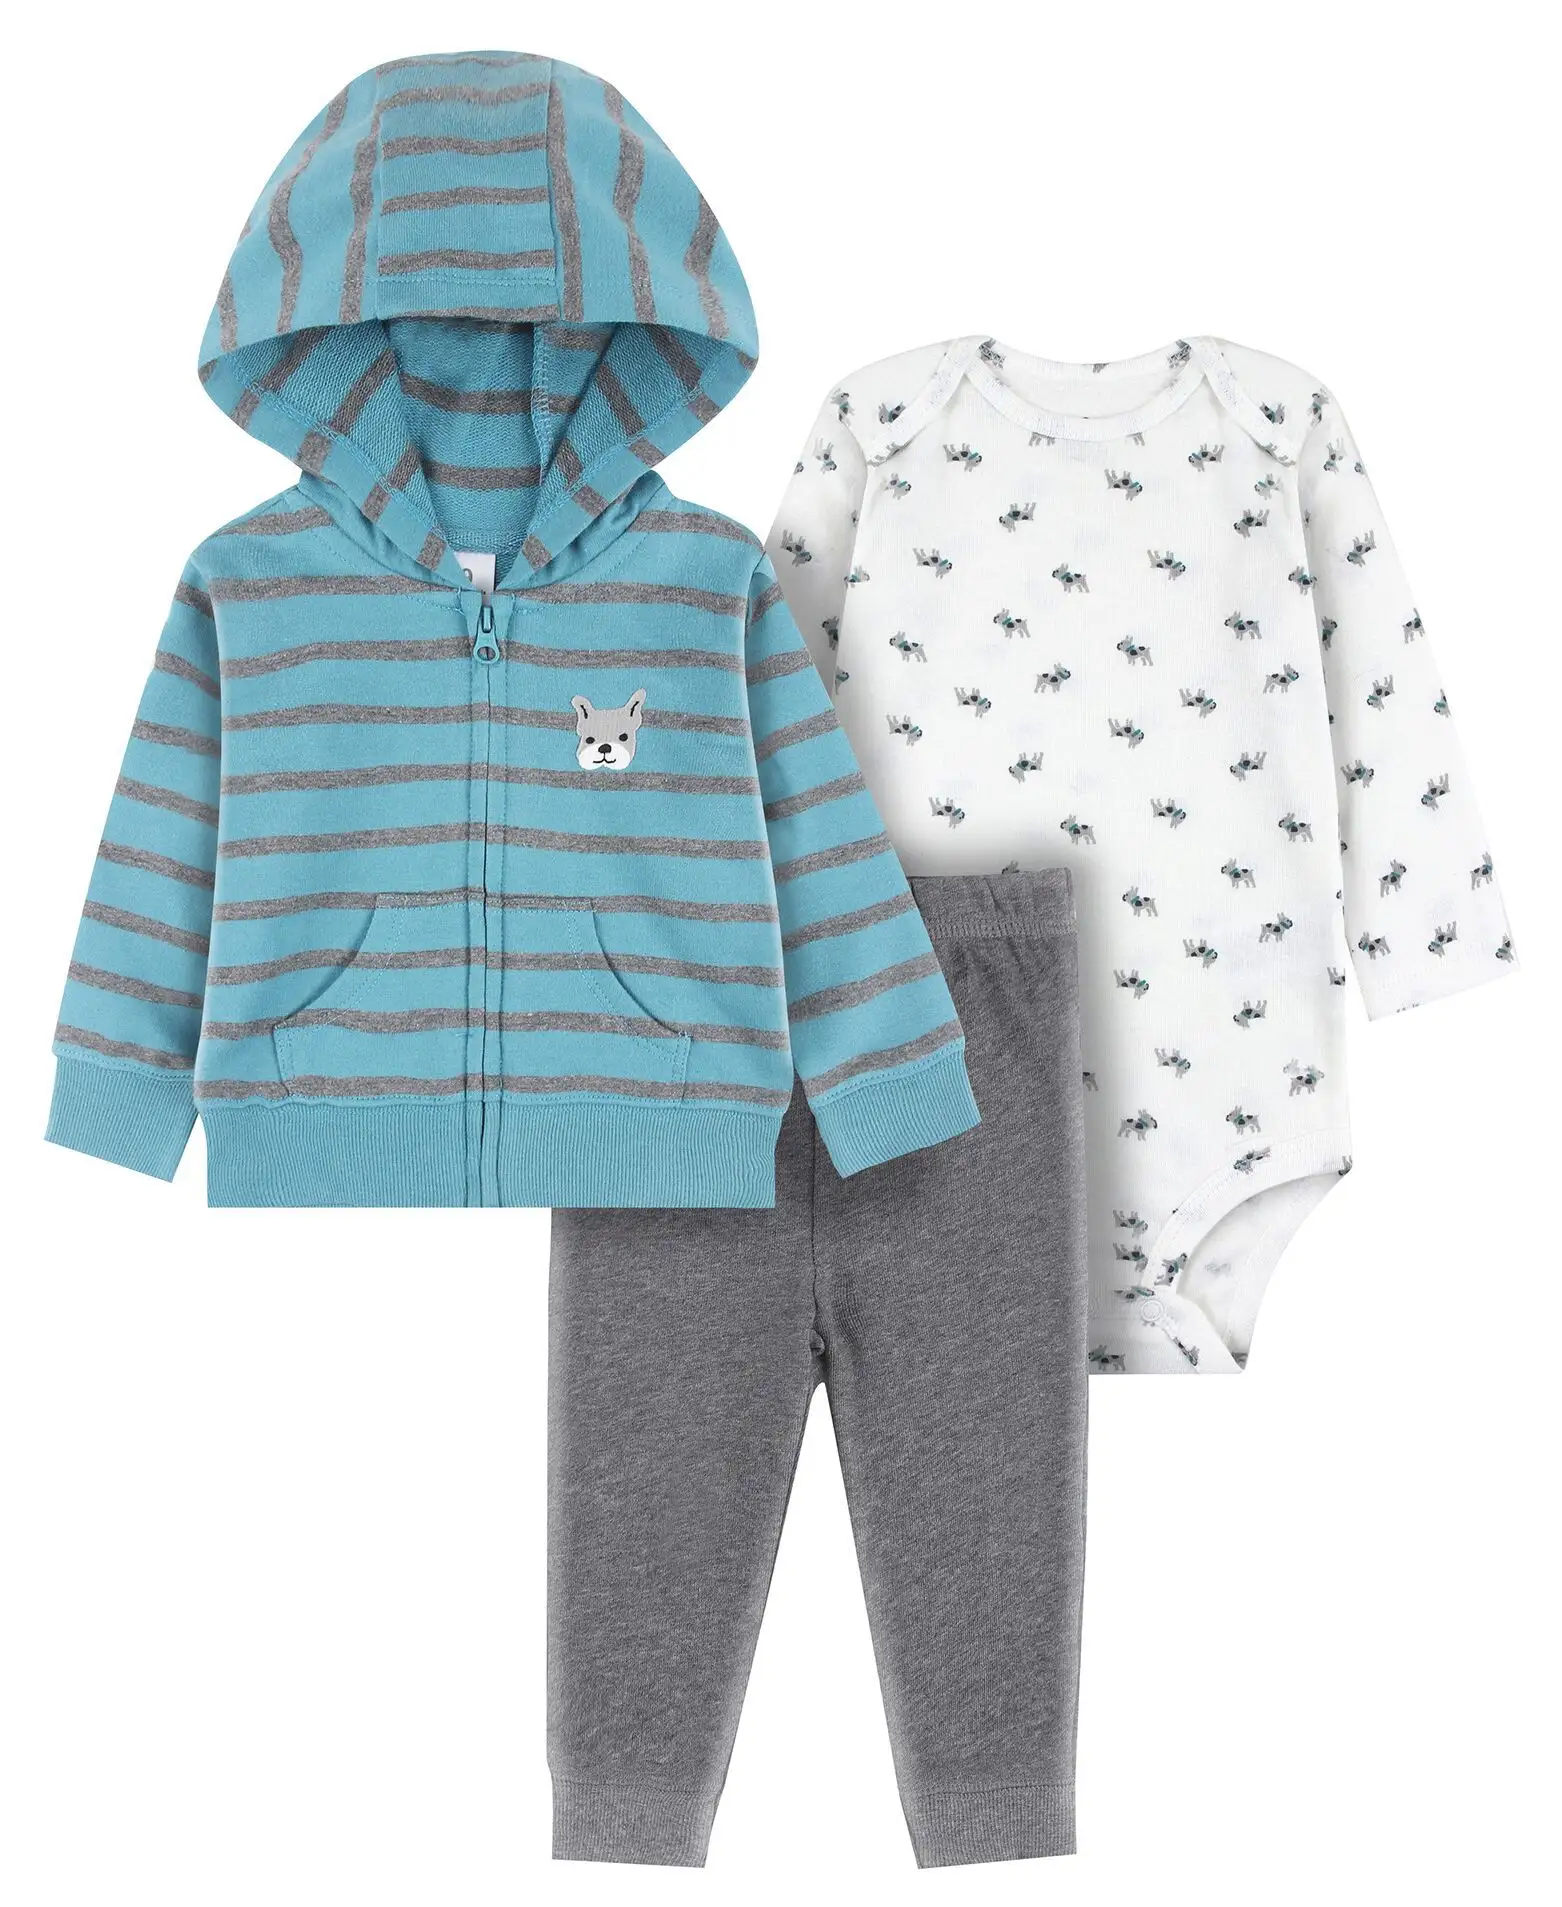 Tenue de printemps pour bébé, ensemble 3 pièces, pull-over à capuche, vêtement doux pour petit garçon, design uni, 2020